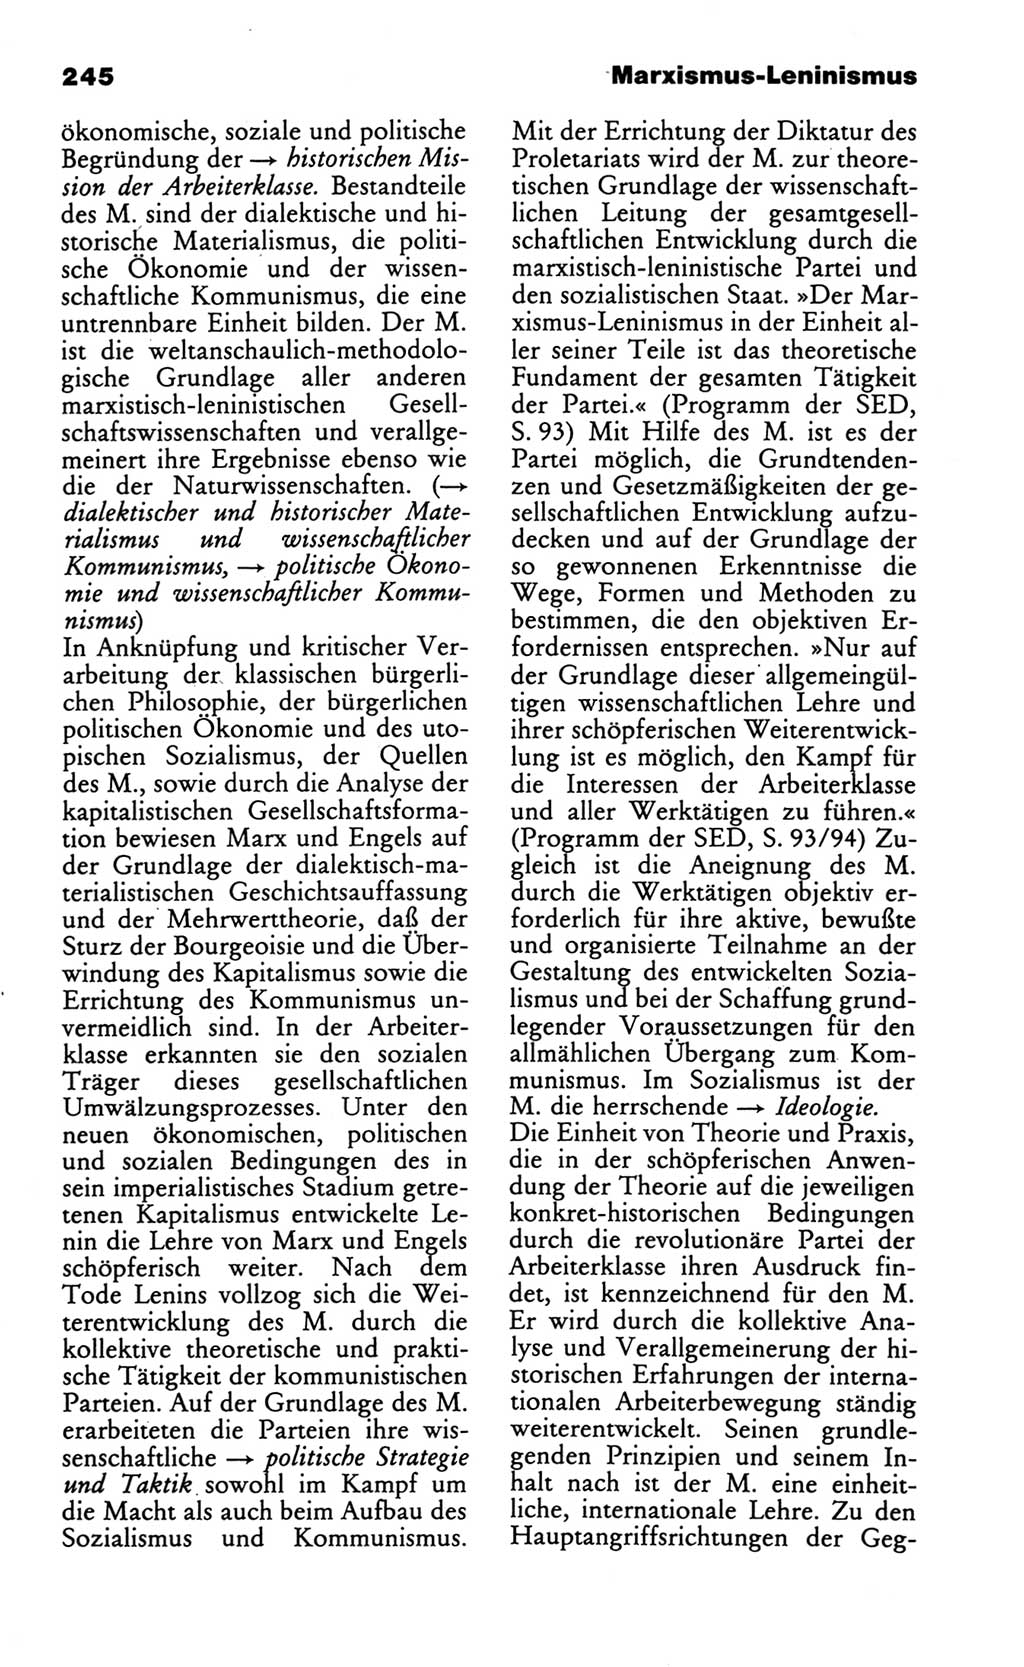 Wörterbuch des wissenschaftlichen Kommunismus [Deutsche Demokratische Republik (DDR)] 1986, Seite 245 (Wb. wiss. Komm. DDR 1986, S. 245)